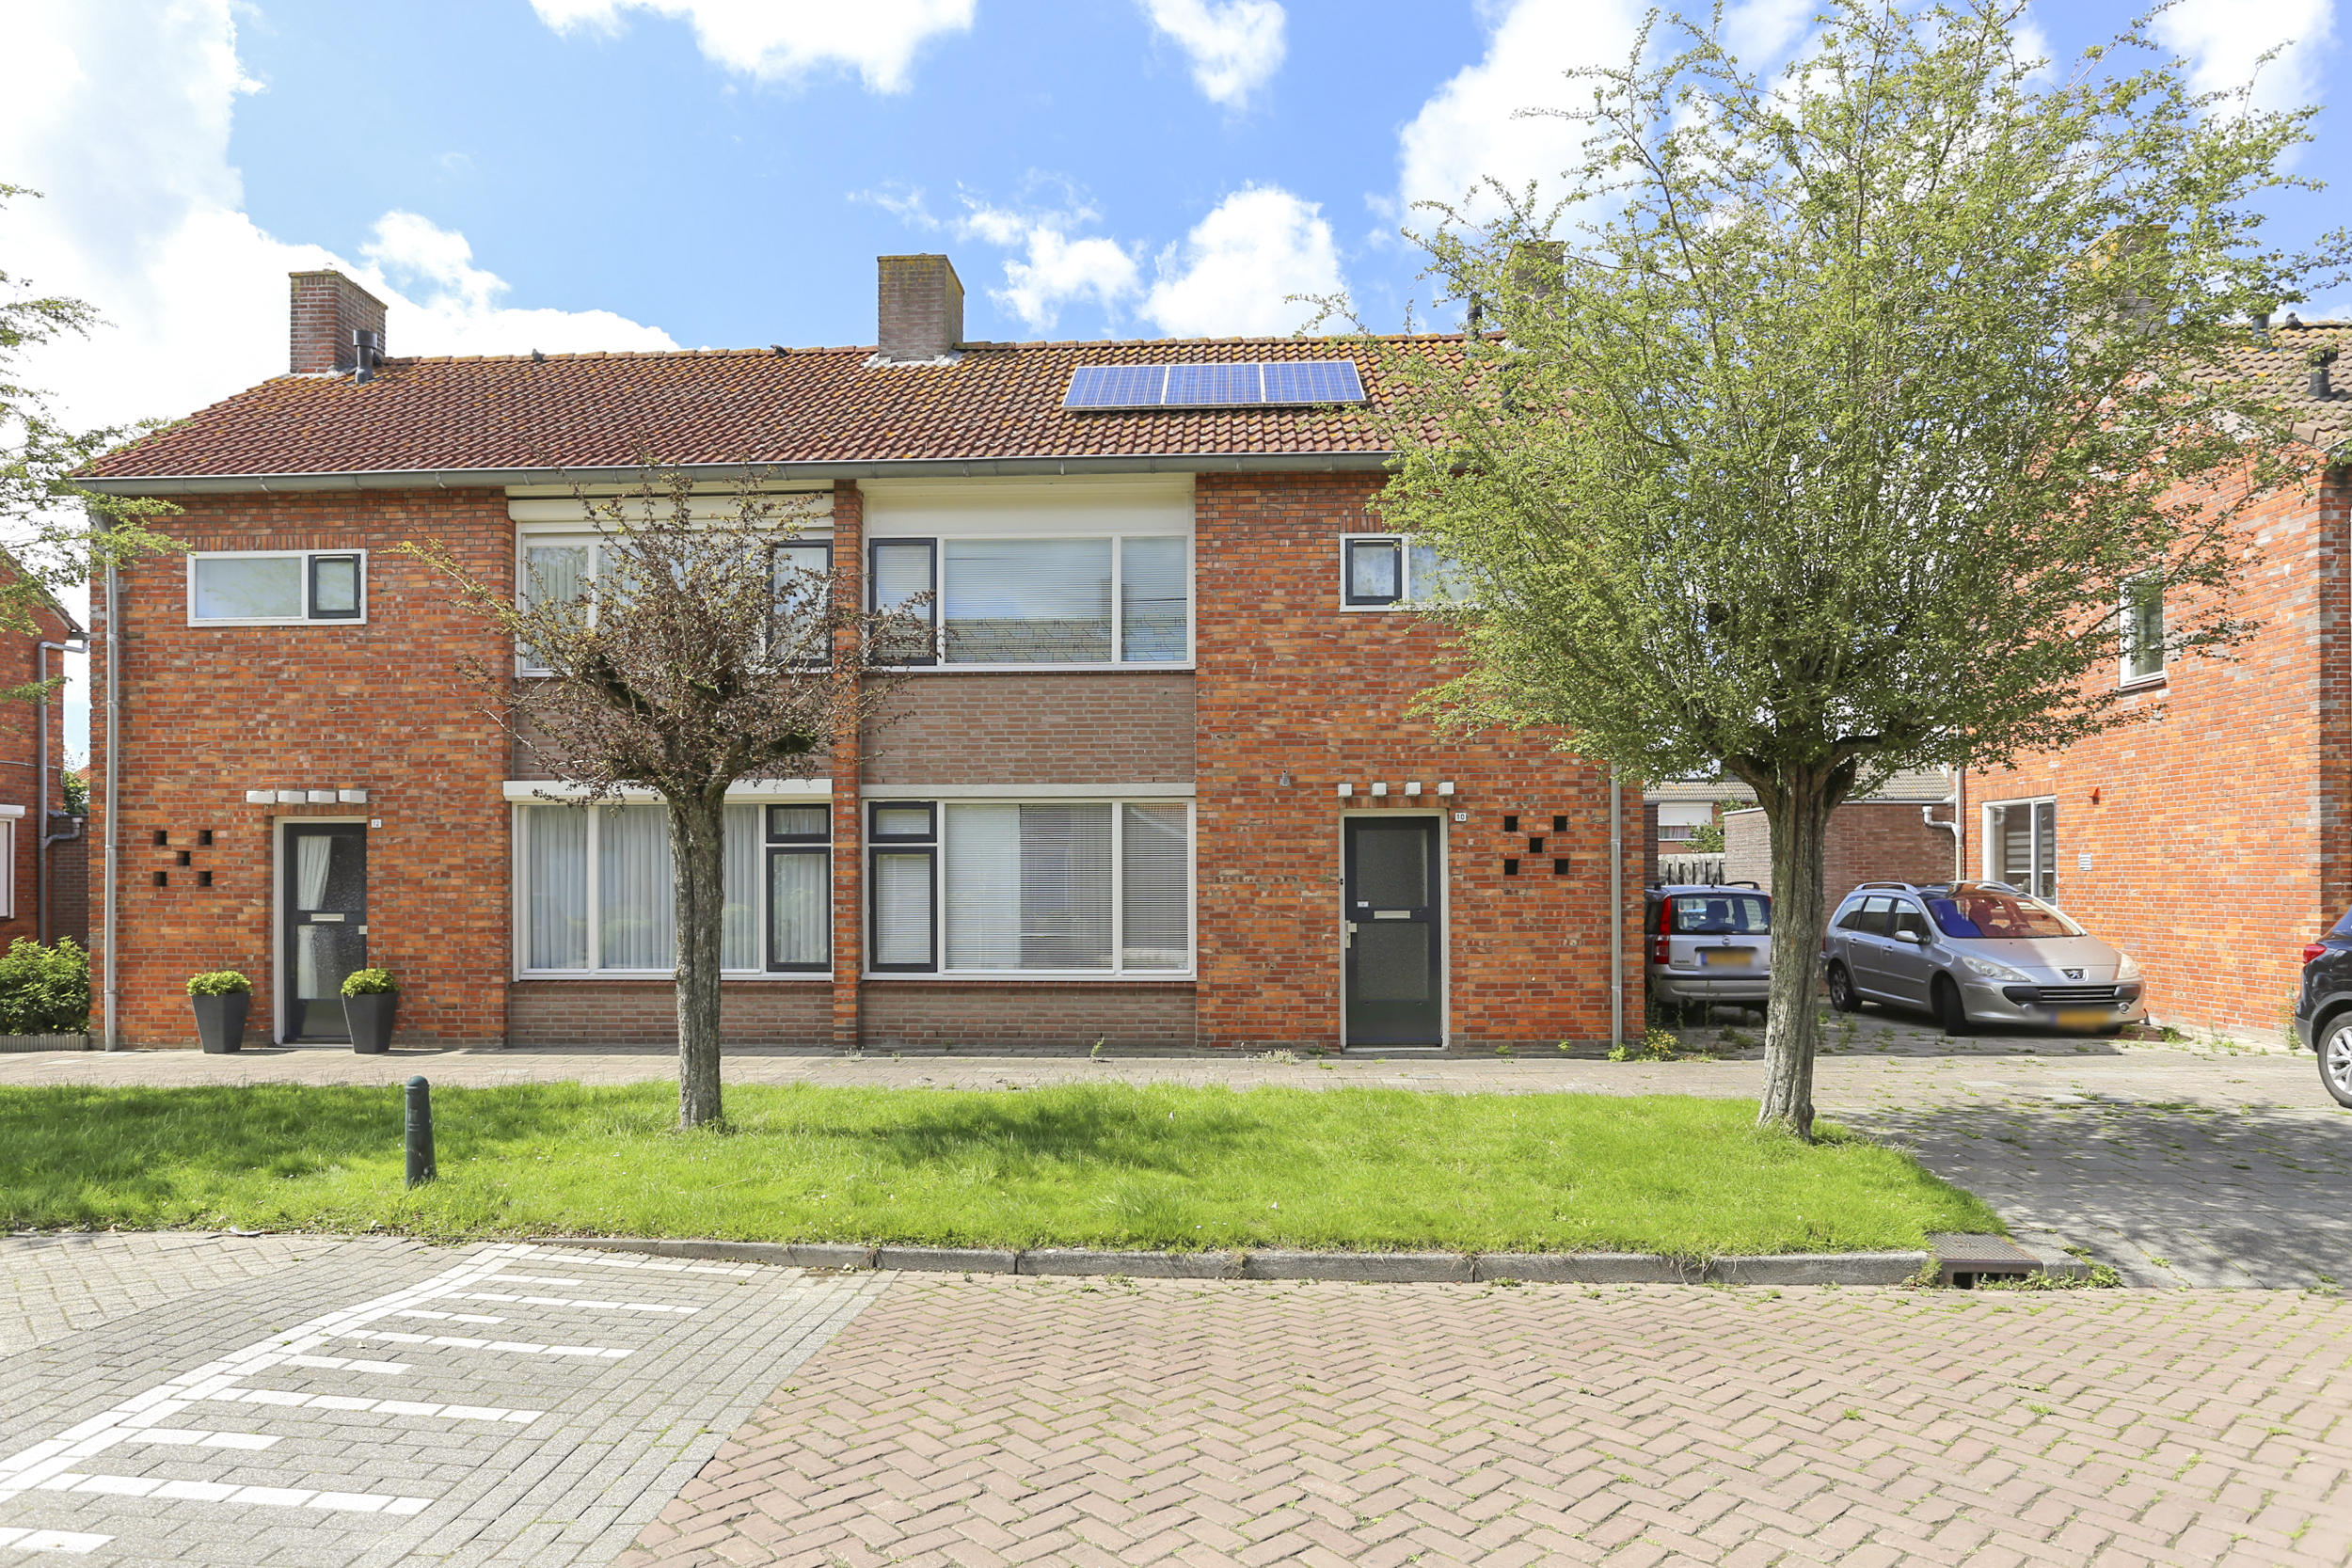 Philips Willemstraat 10, 4671 EZ Dinteloord, Nederland